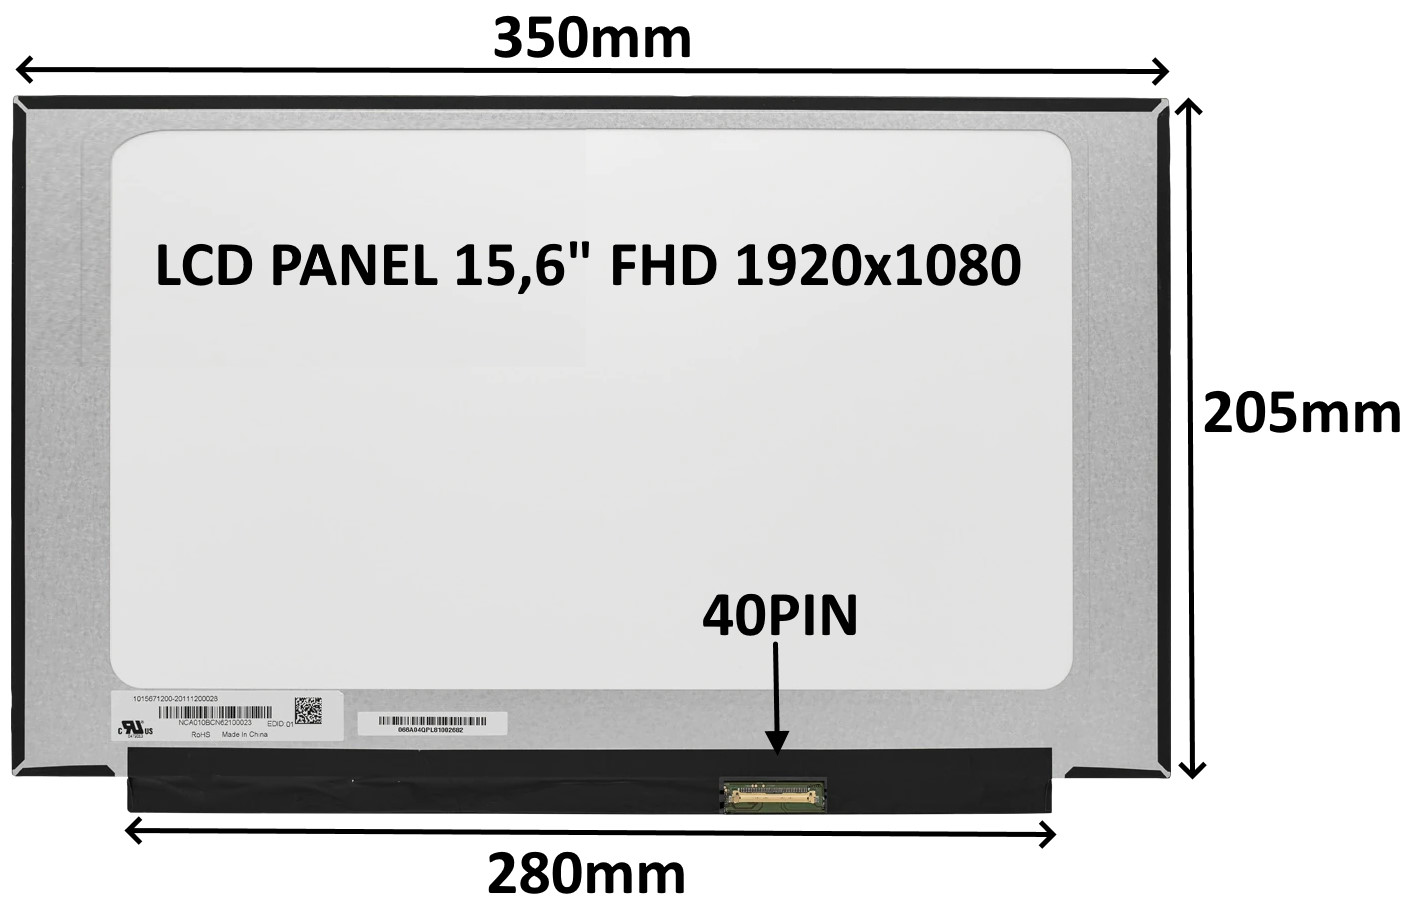 Sil LCD PANEL 15,6 FHD 1920x1080 40PIN MATNÝ IPS 144HZ / BEZ ÚCHYTŮ 77030550 LCD PANEL 15,6" FHD 1920x1080 40PIN MATNÝ IPS 144HZ / BEZ ÚCHYTŮ